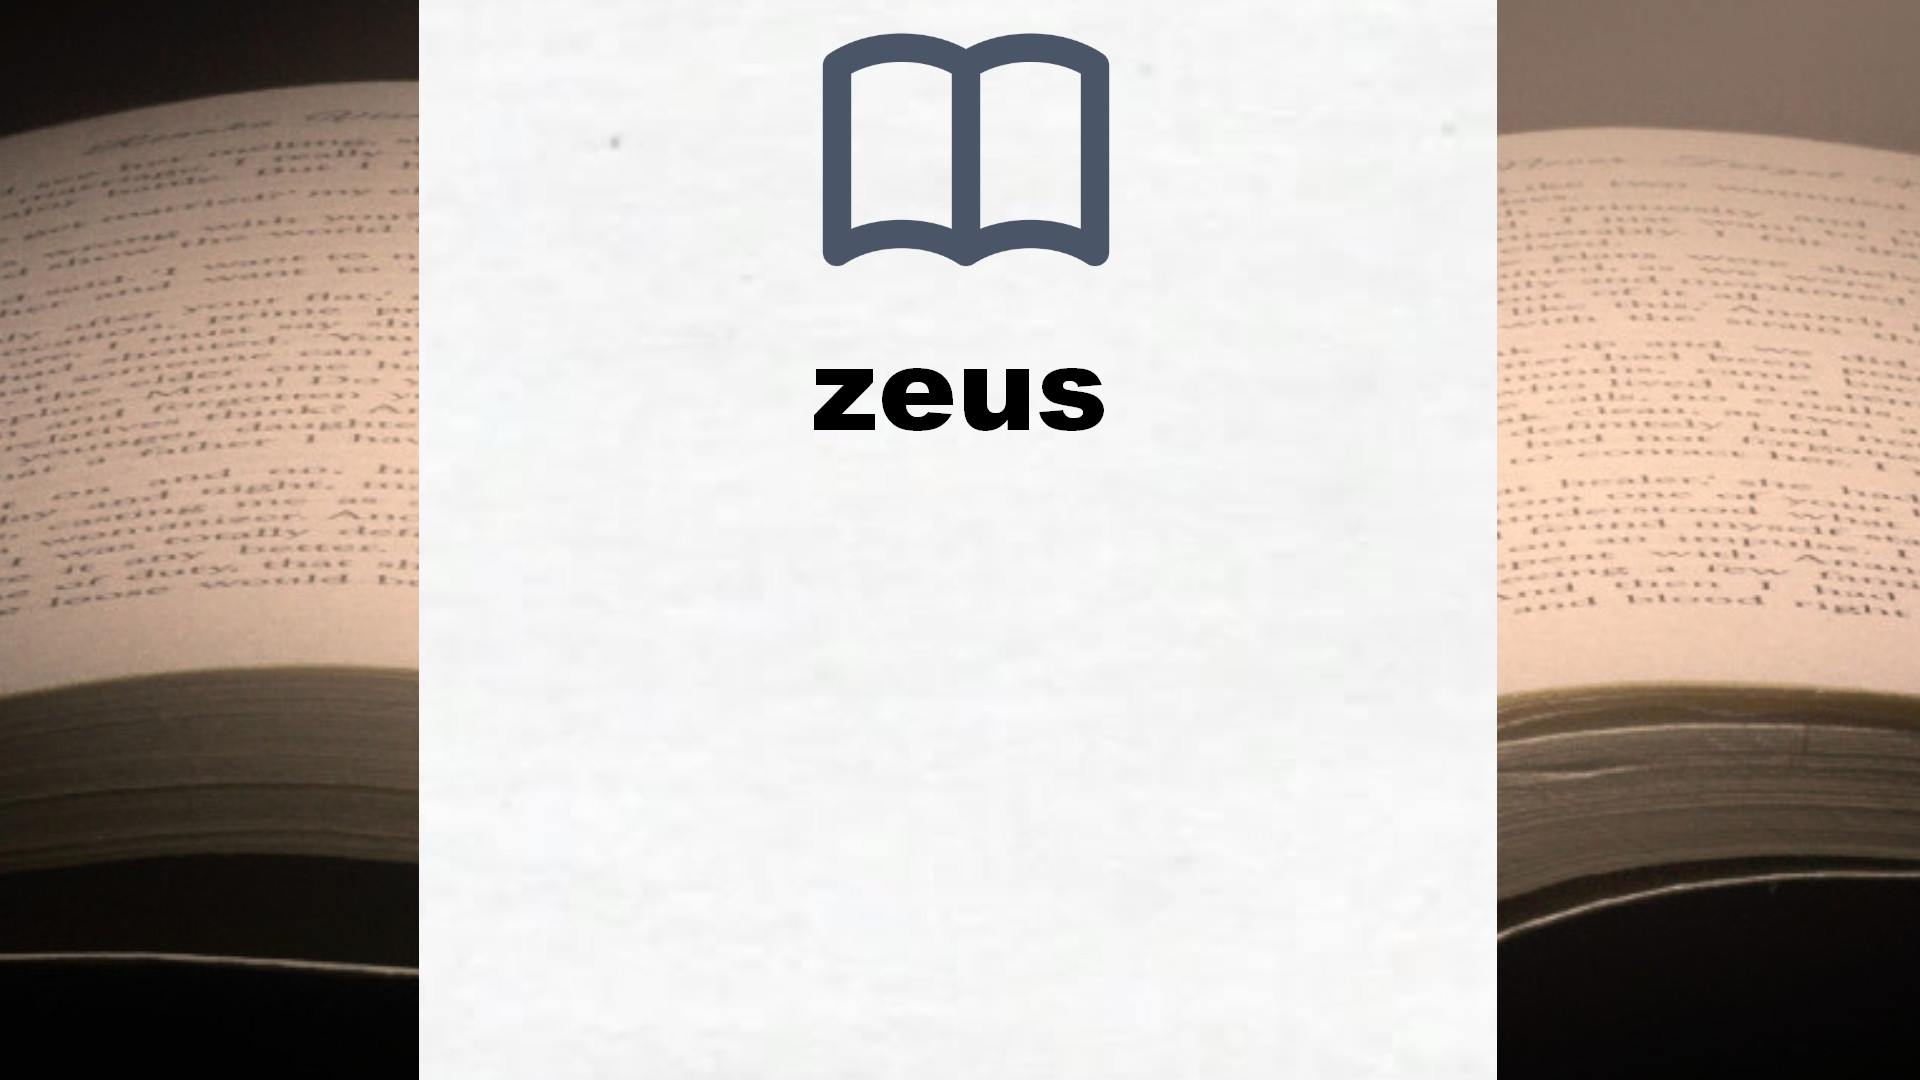 Libros sobre zeus